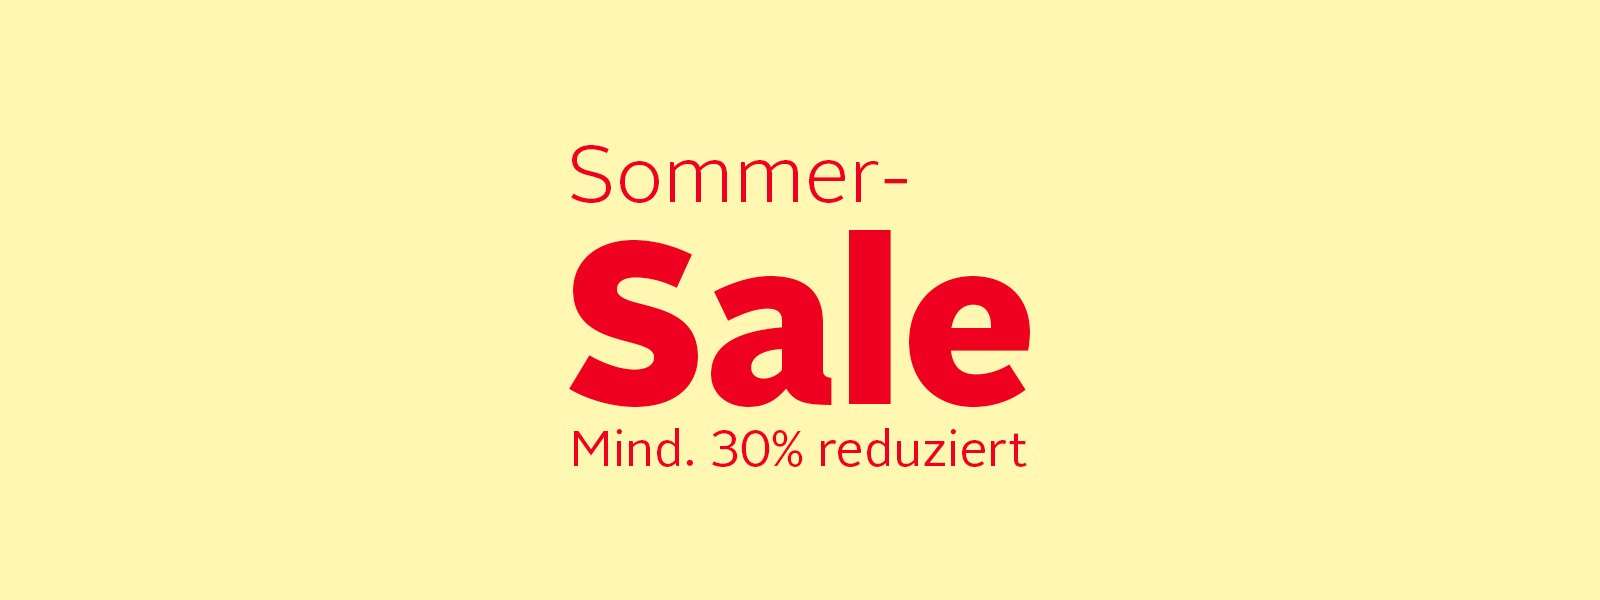 Sommer-Sale